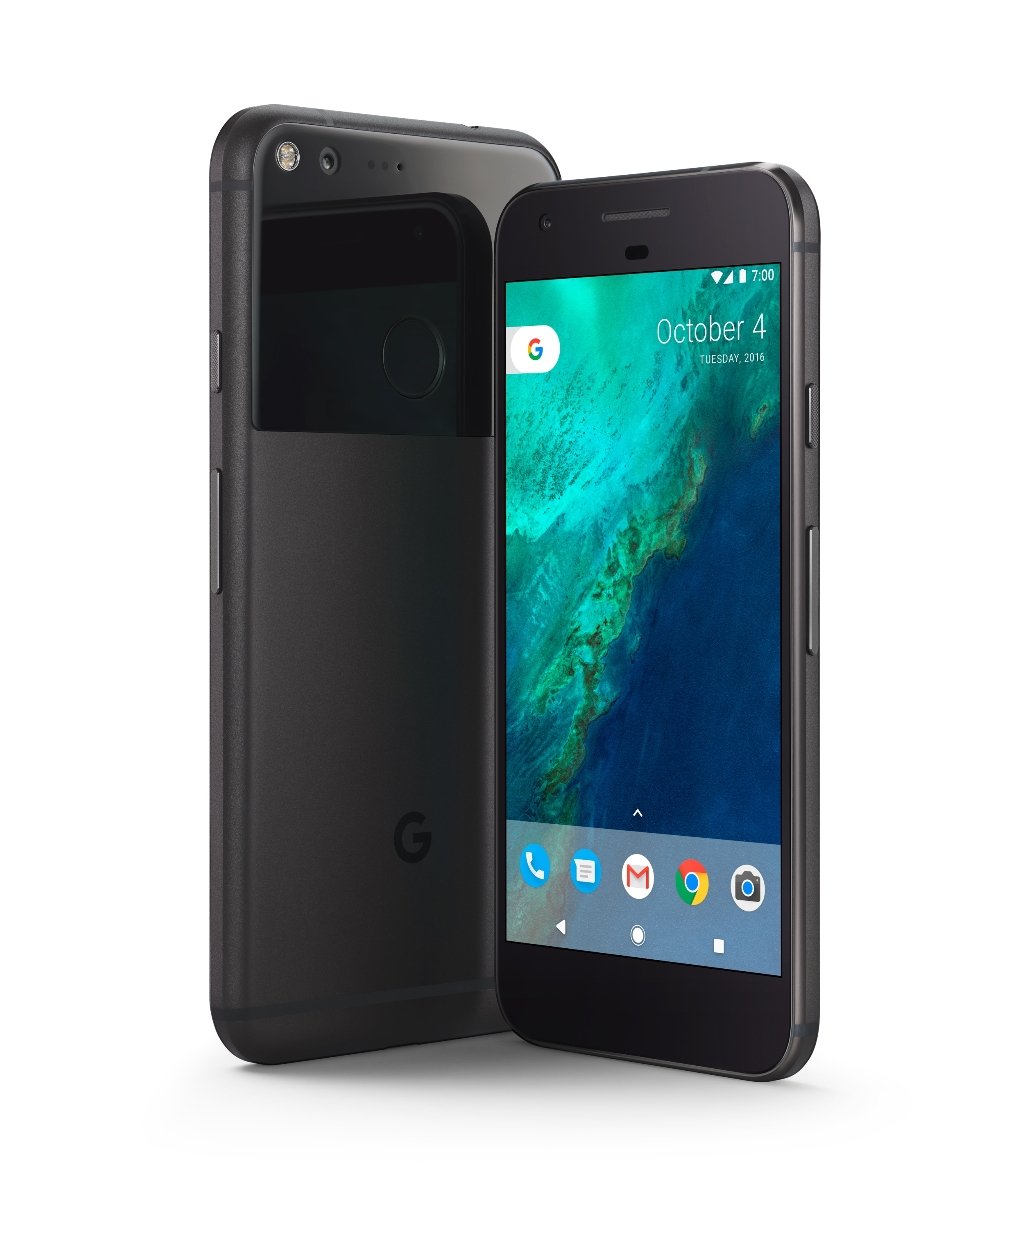 EEs black Google Pixel smartphone